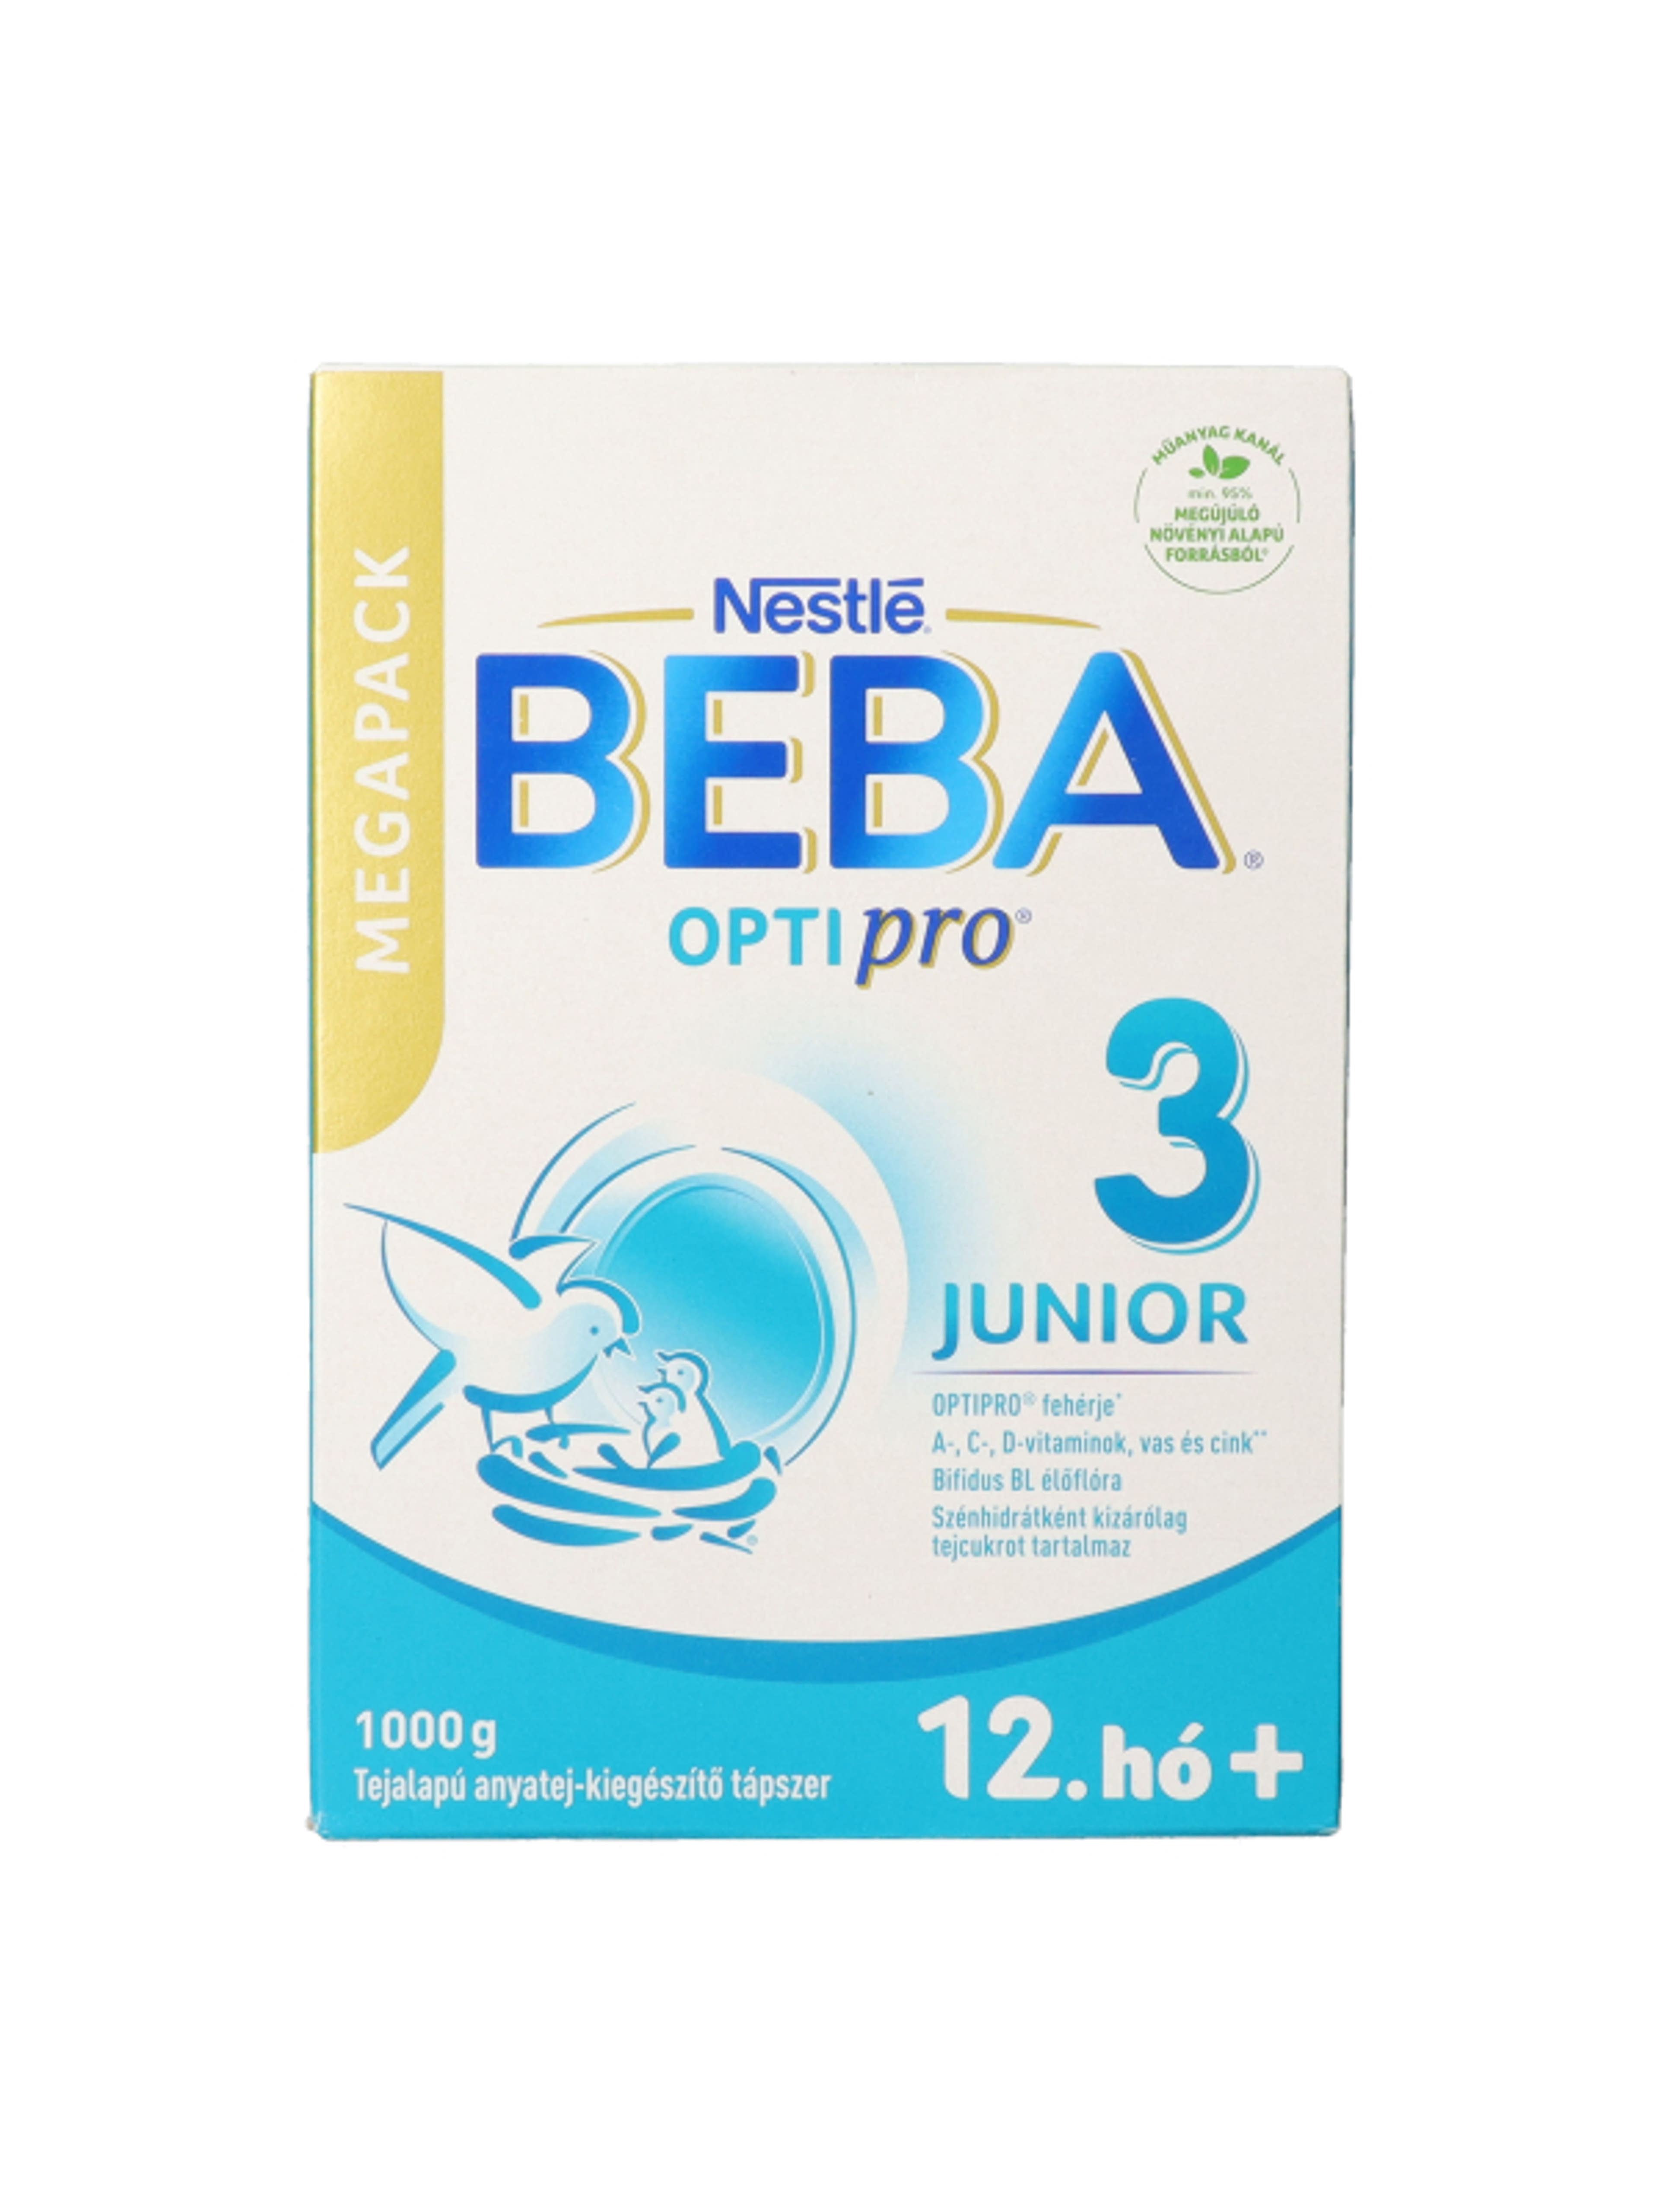 Beba Optipro 3 Junior tejalapú anyatej-kiegészítő tápszer 12. hónapos kortól - 1000 g-3